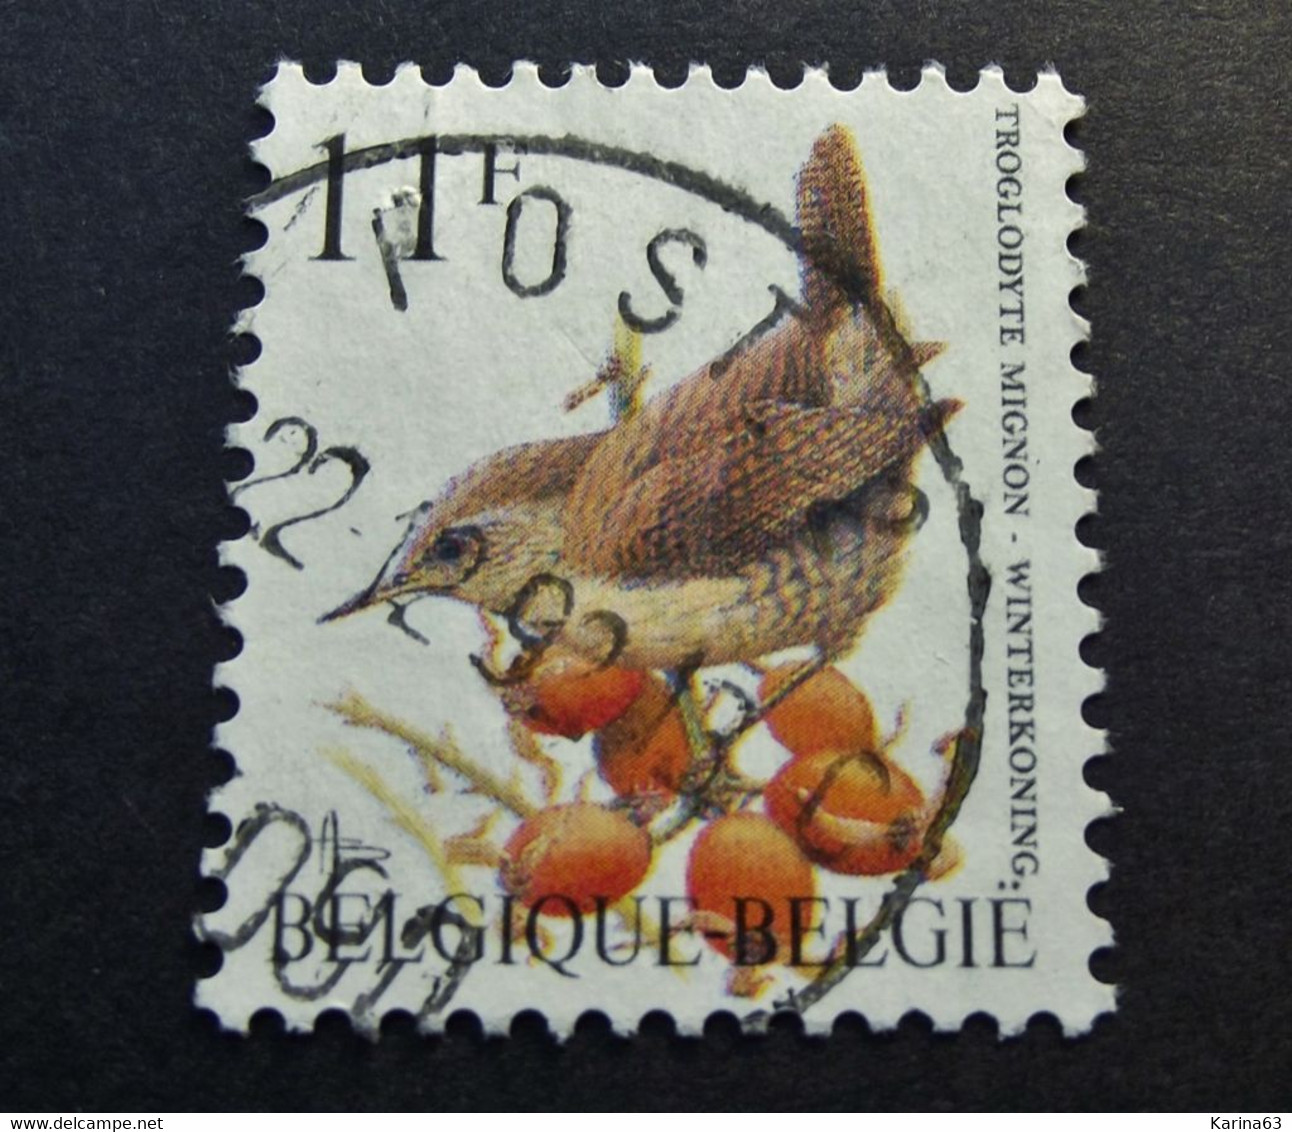 Belgie Belgique  -  Militaire Poststempel 4090 - Post 2 - Marques D'armées